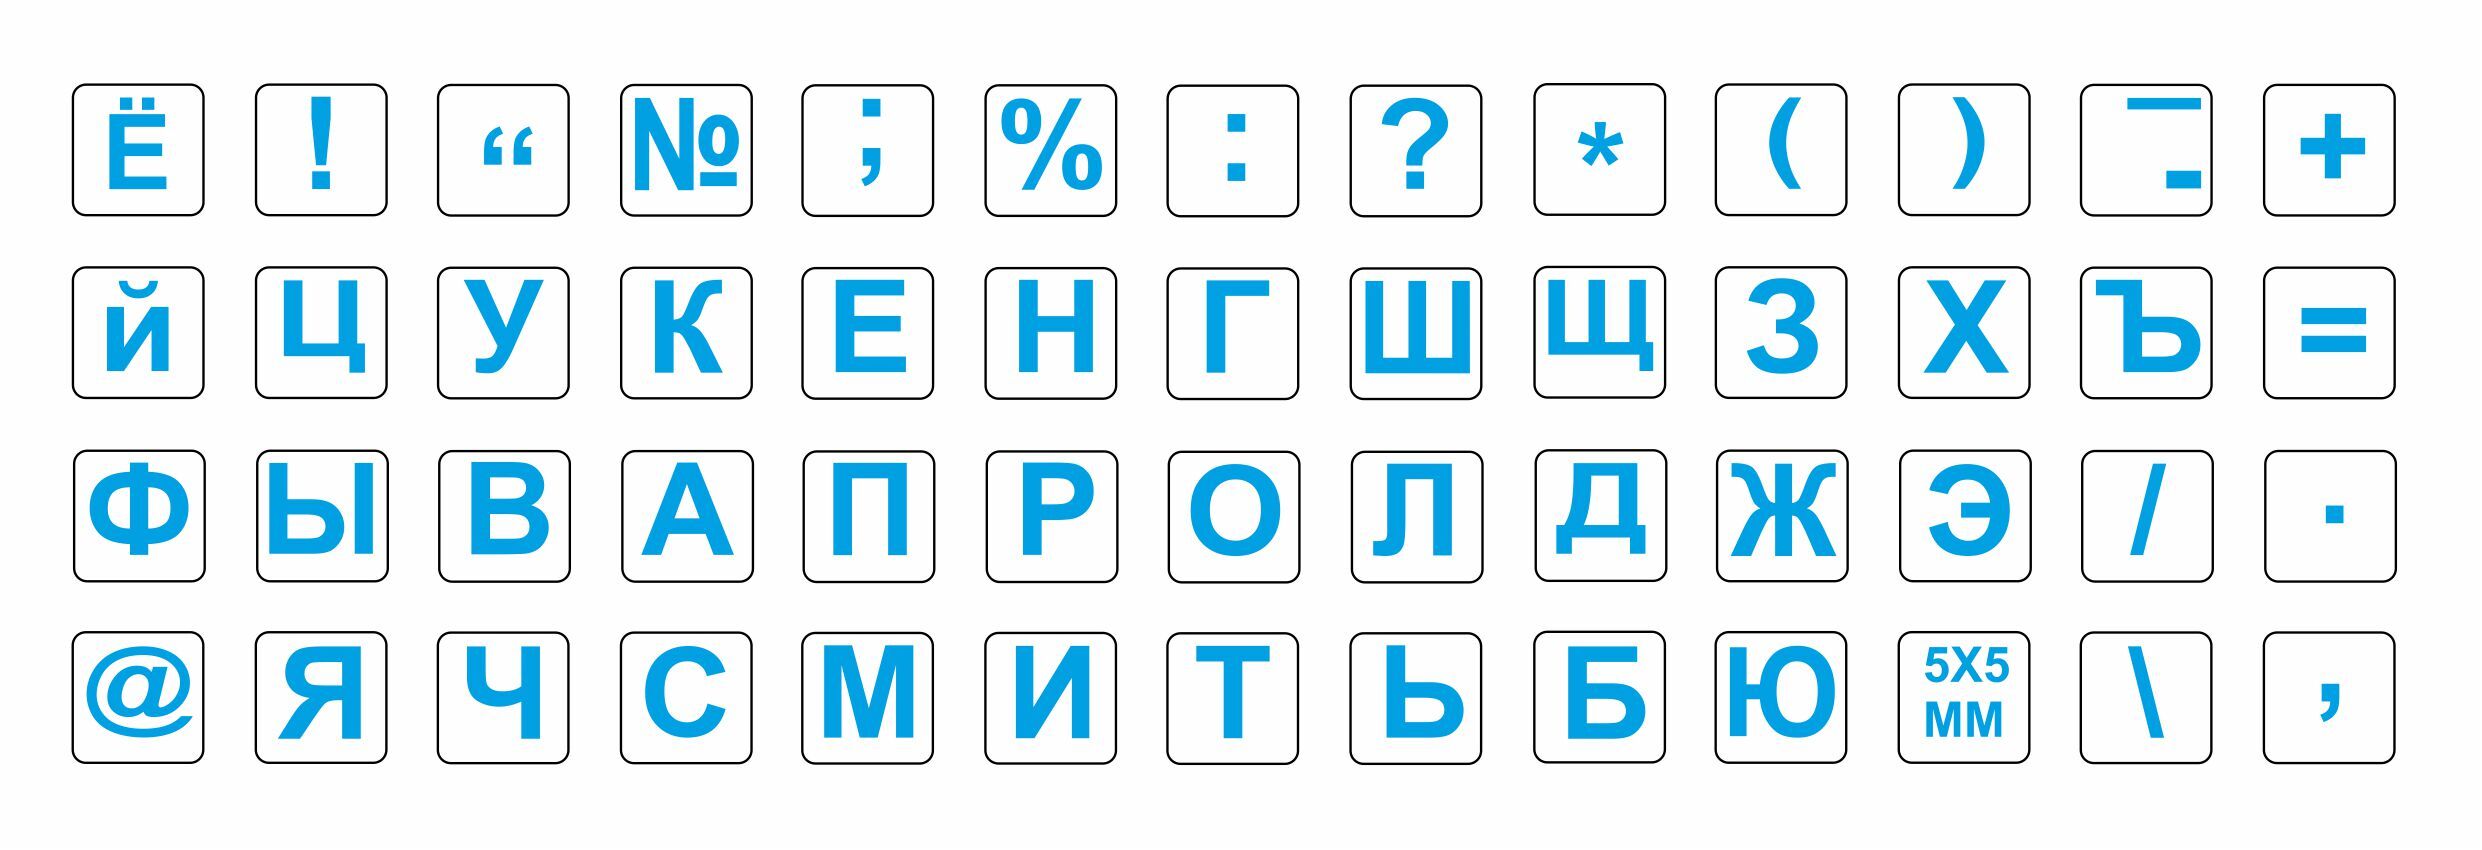 Русские буквы синего цвета